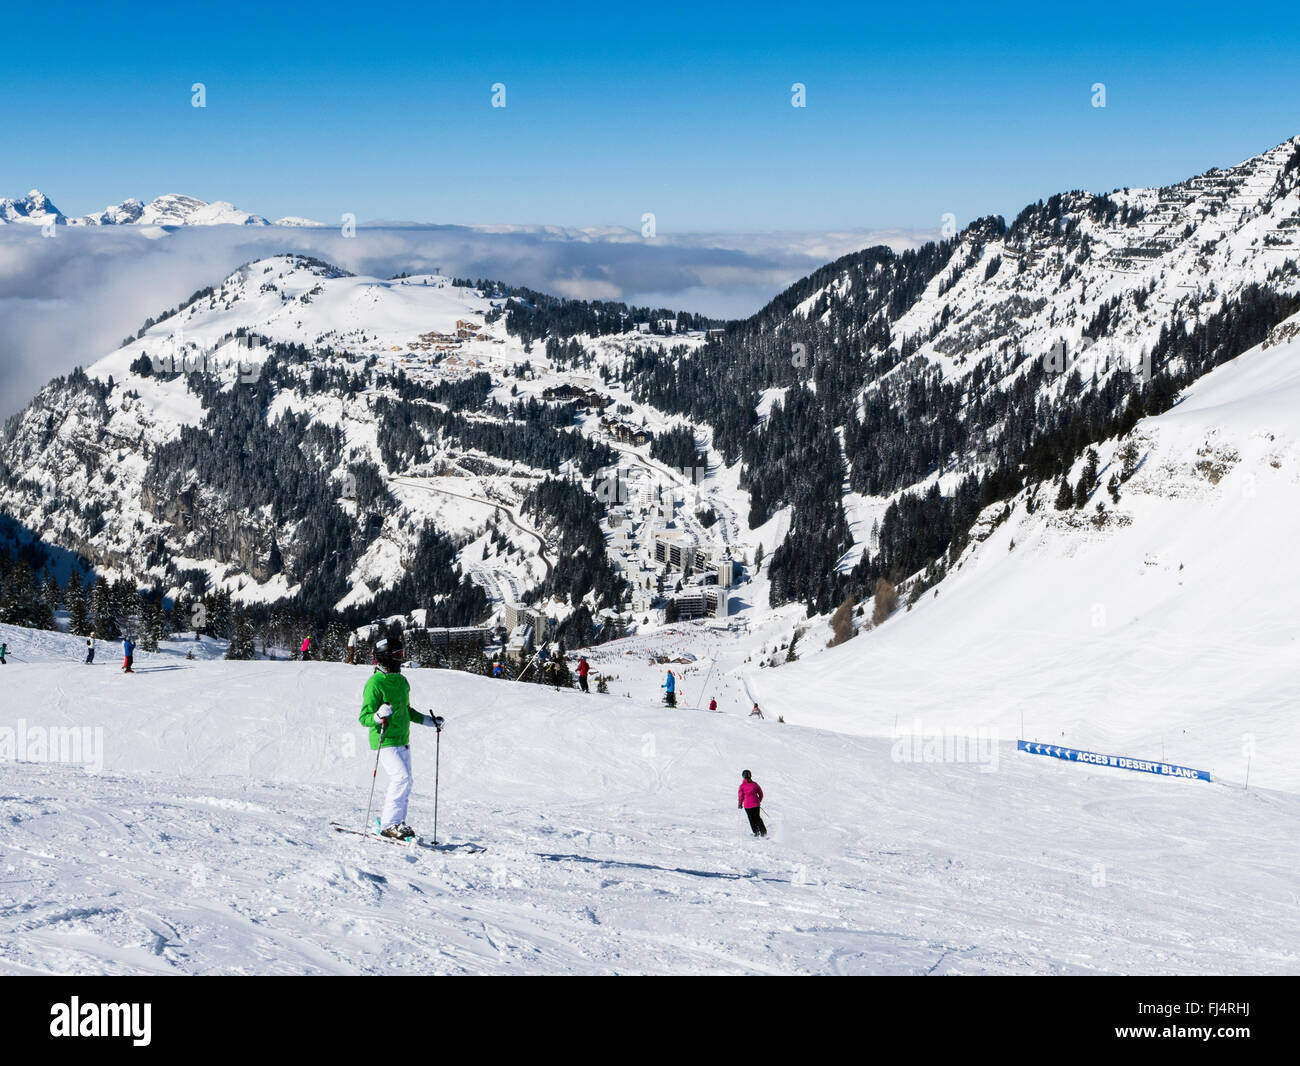 Les Skieurs sur les pentes de neige dans le domaine skiable du Grand Massif au-dessus de station de ski alpin de Flaine, Haute Savoie, Rhône-Alpes, France Banque D'Images